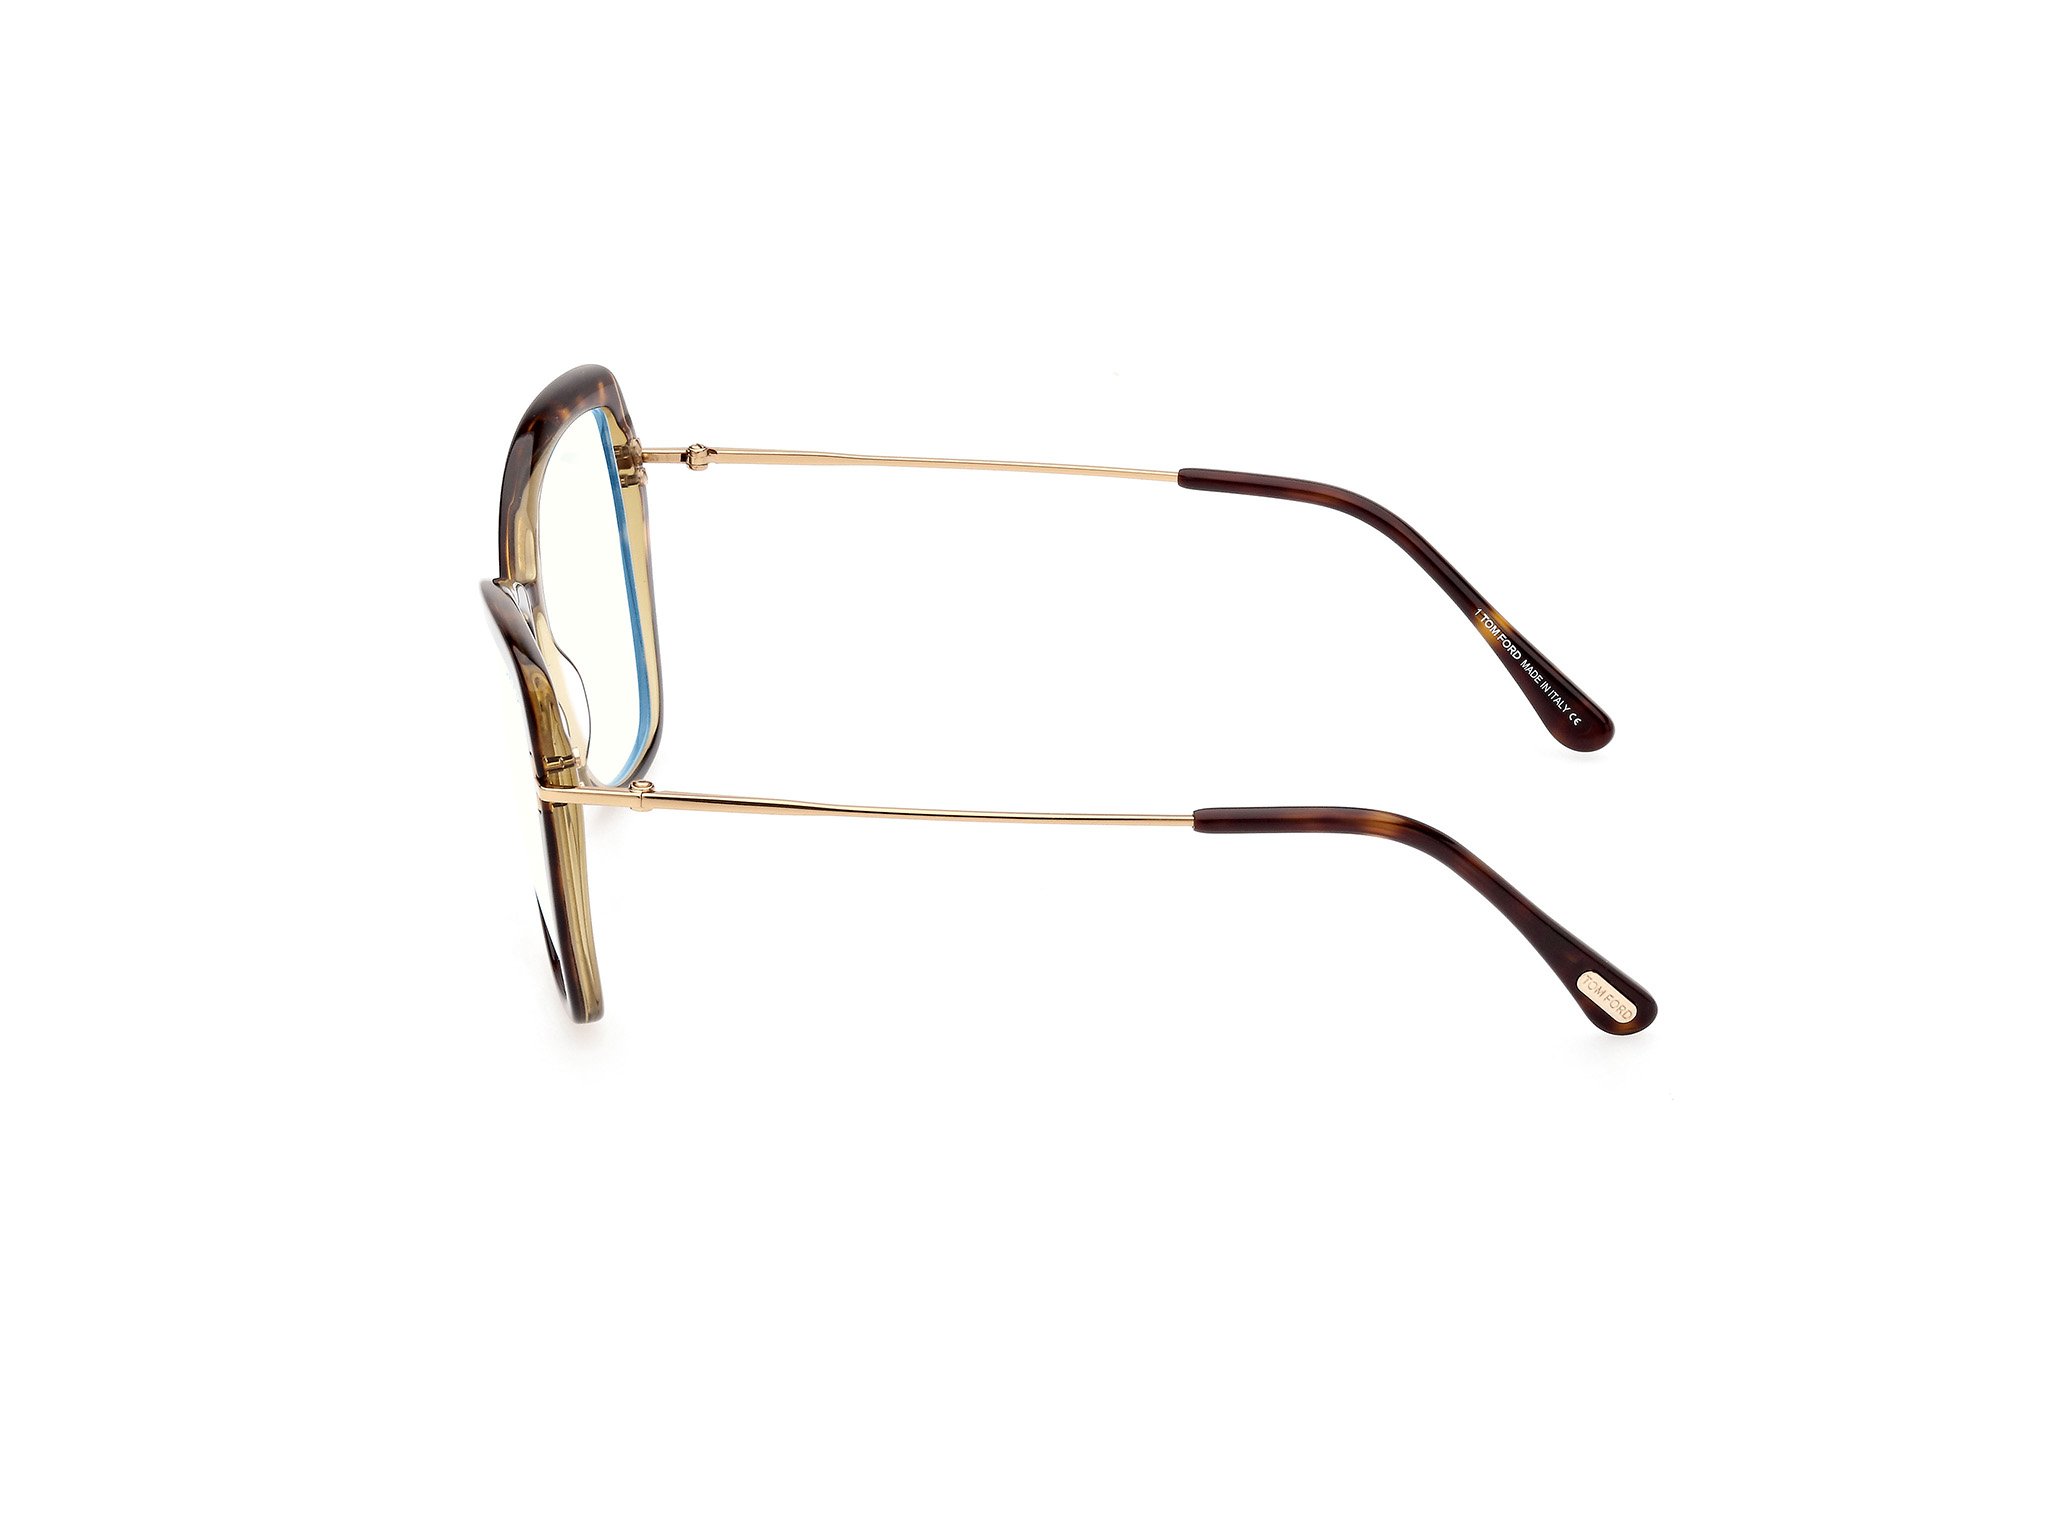 Das Bild zeigt die Korrektionsbrille FT5882-B 056 von der Marke Tom Ford in havanna/gold.